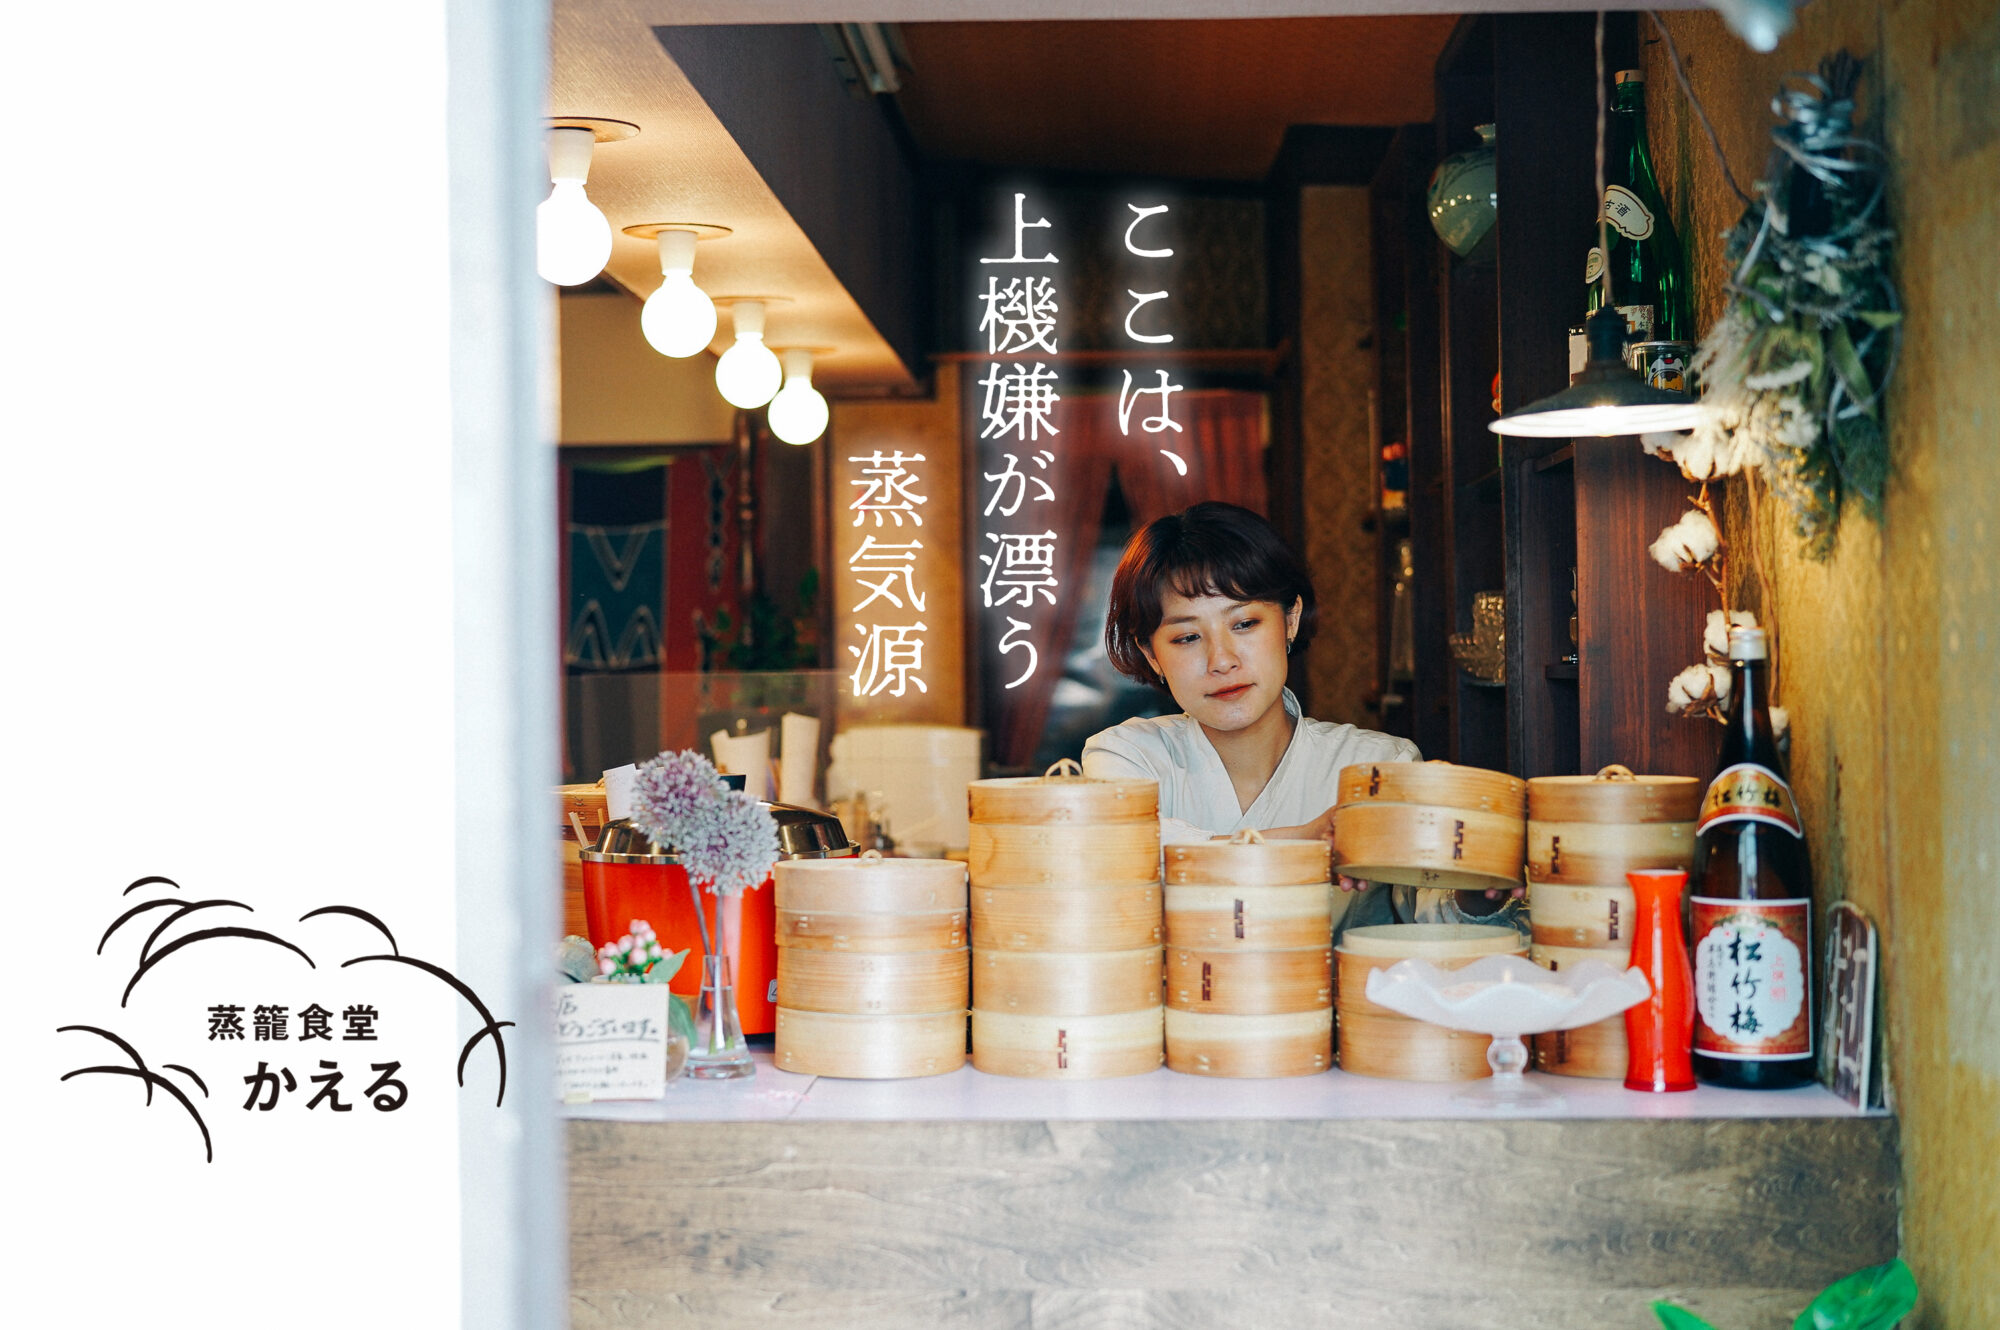 三浦野菜とお酒を愉しむ、蒸し料理の店。女性ひとりで営む「蒸籠食堂 かえる」